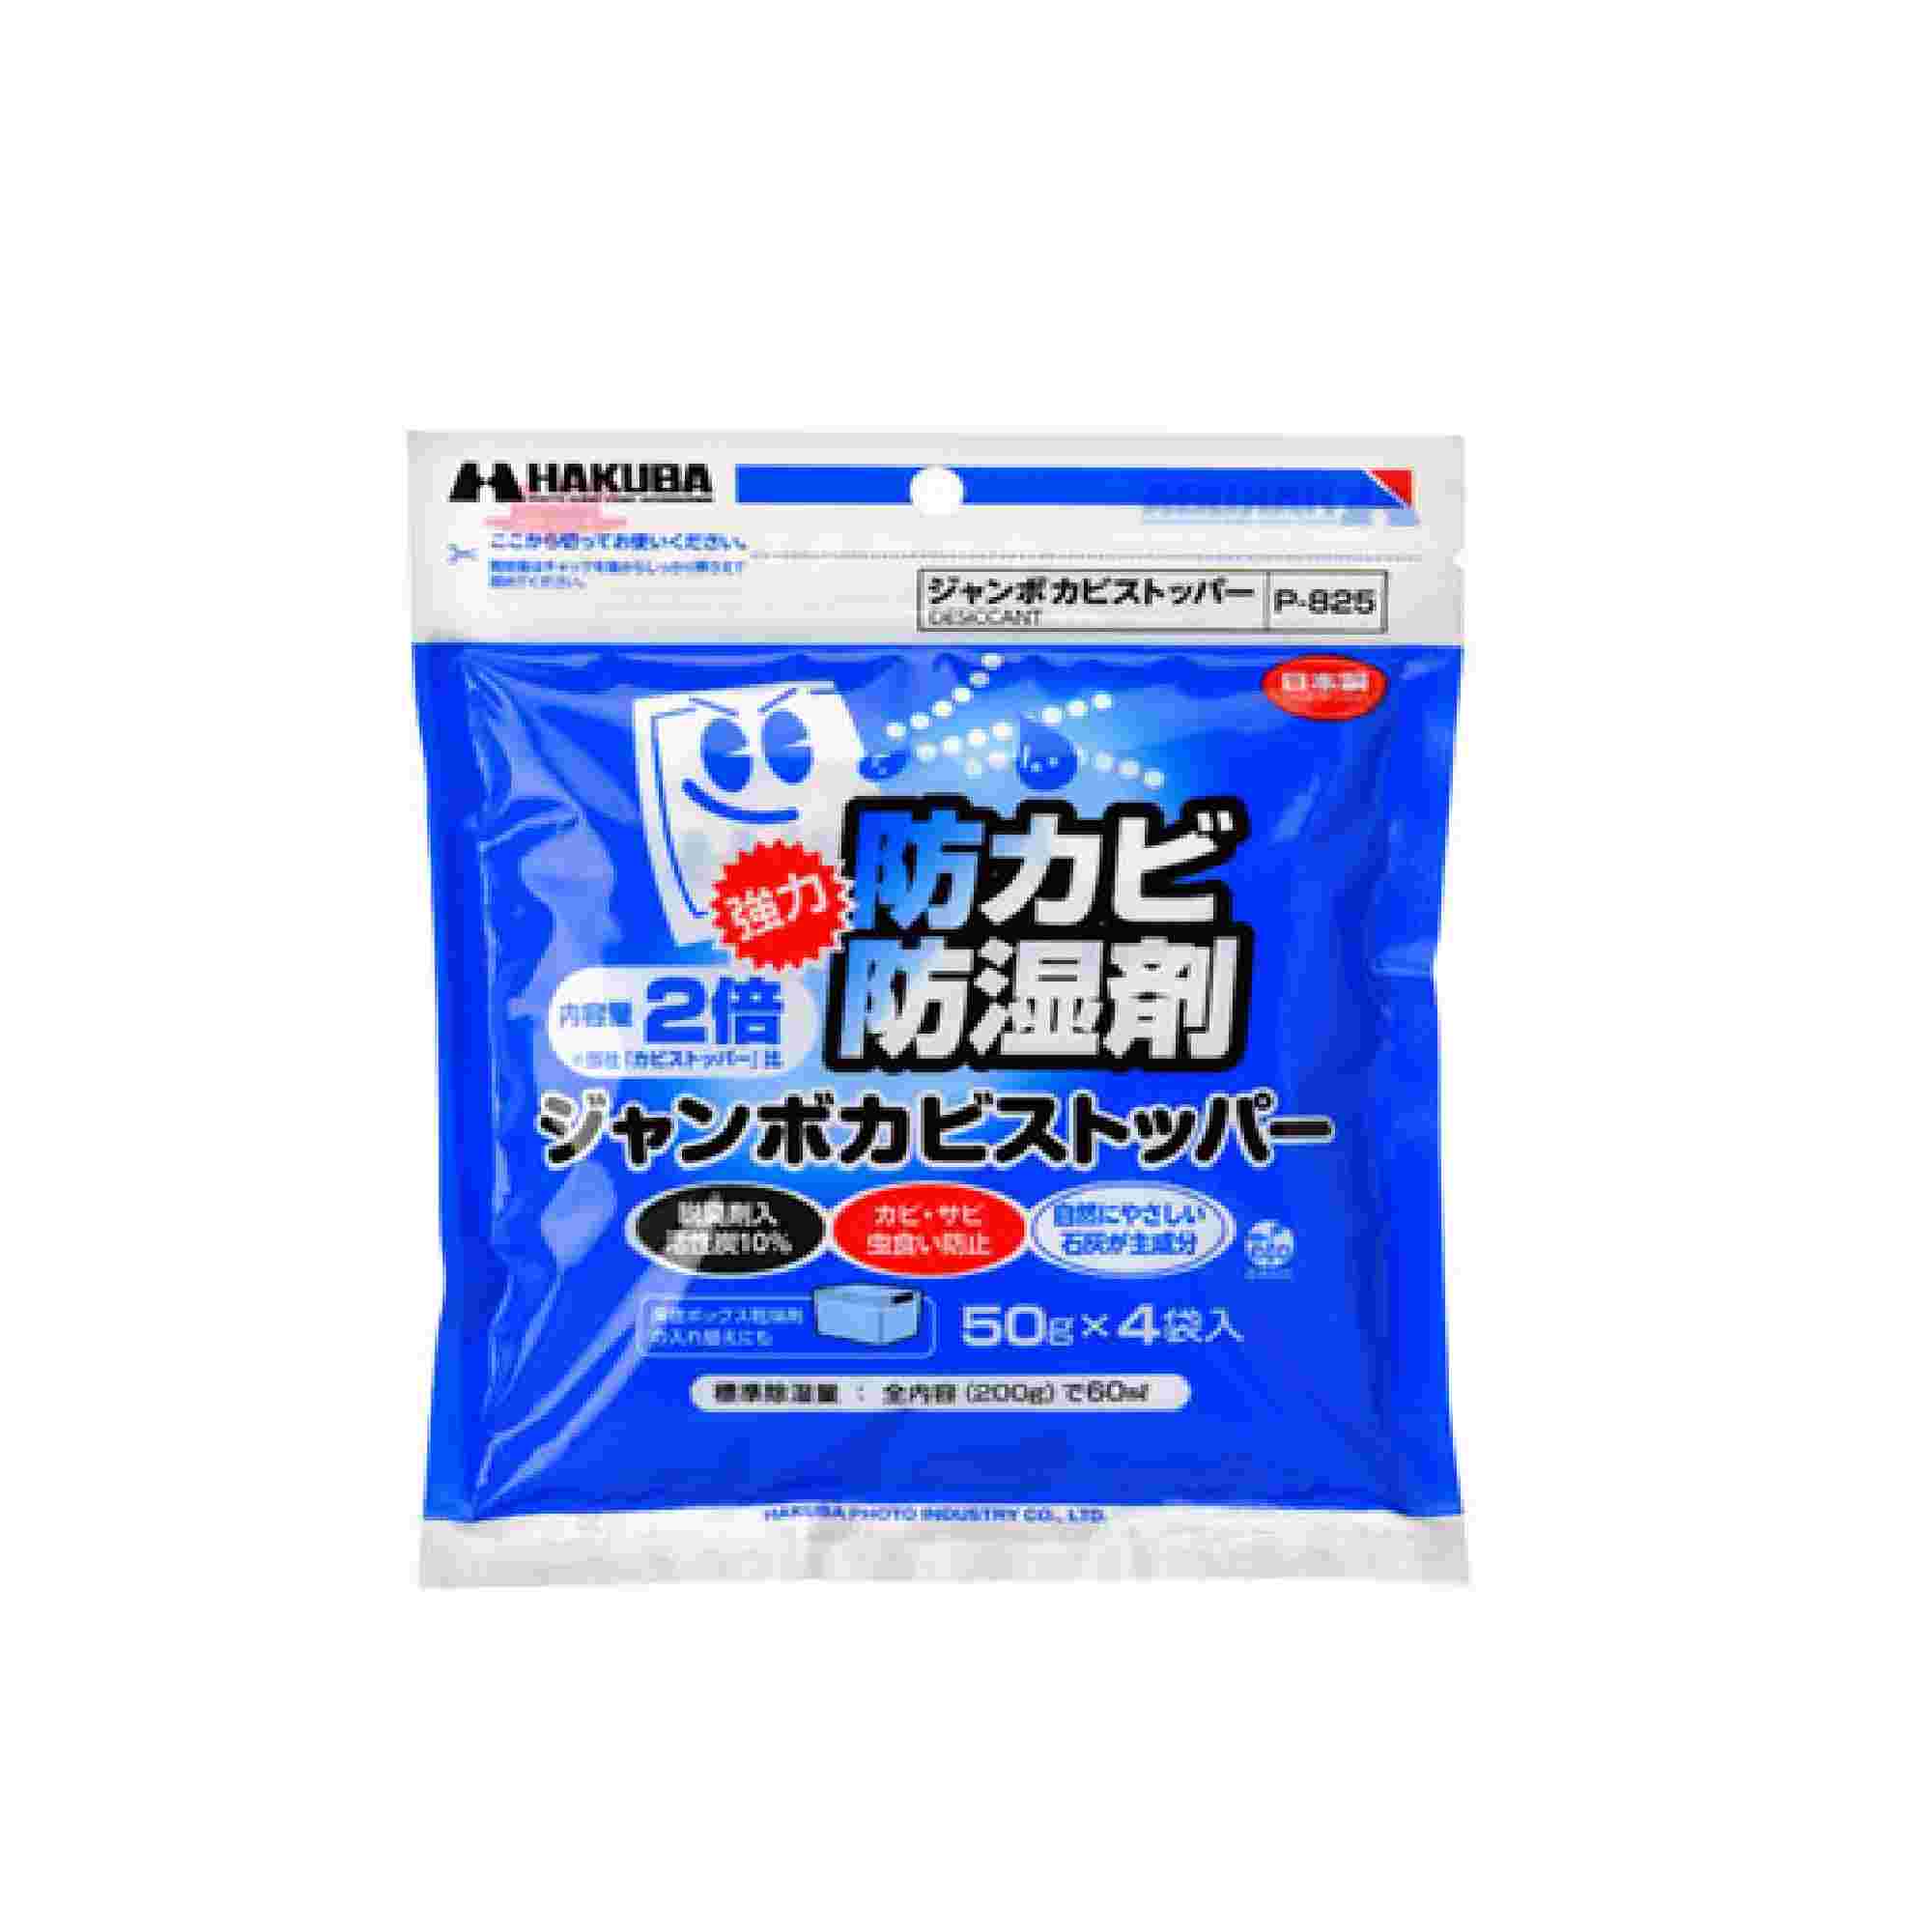 Hakuba 強力防潮防臭劑4片裝 (50G) 清潔用品